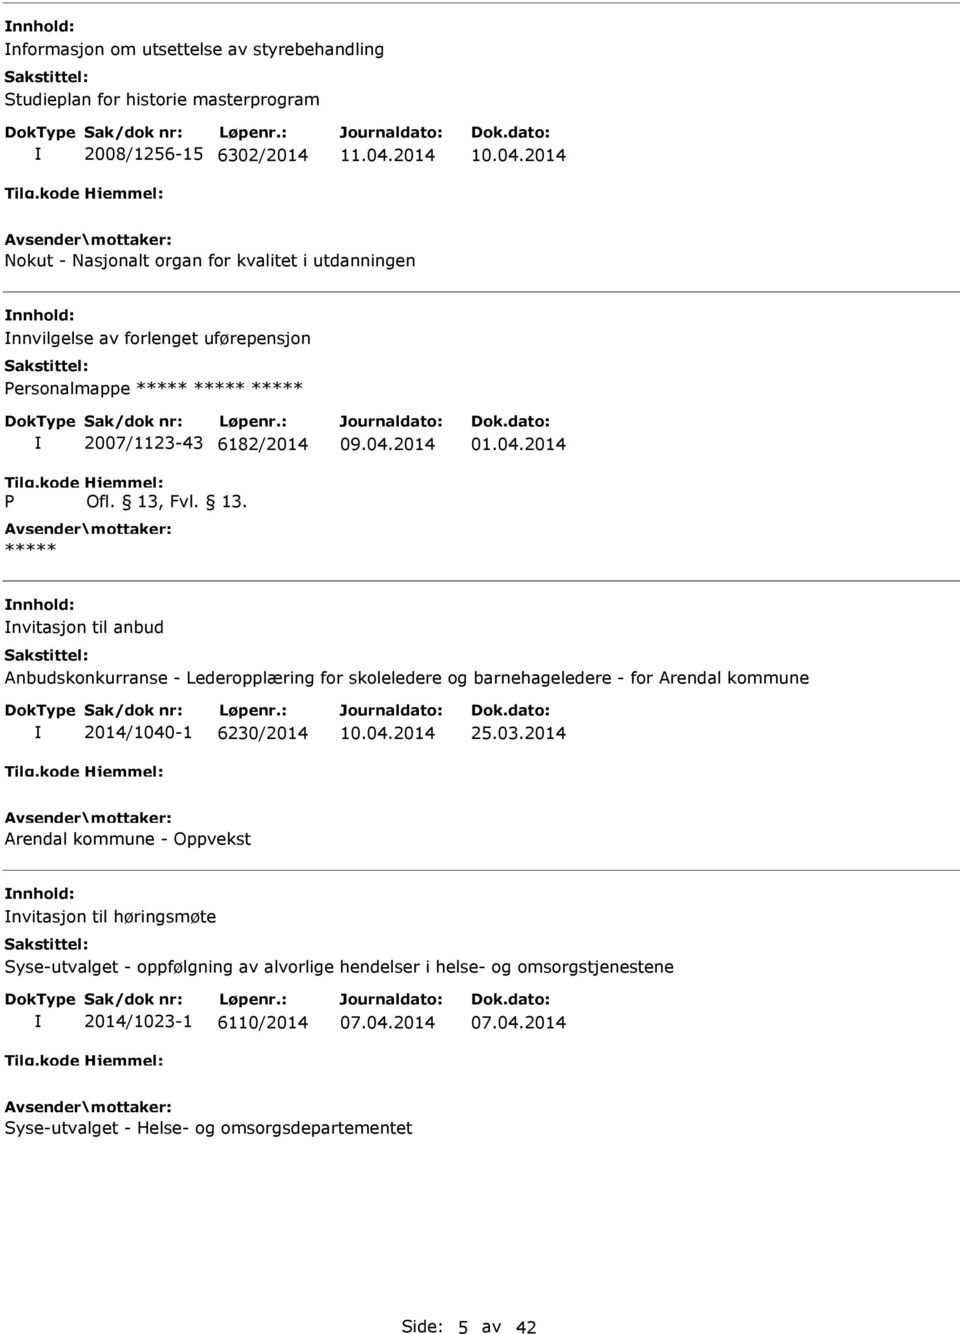 2014 nvitasjon til anbud Anbudskonkurranse - Lederopplæring for skoleledere og barnehageledere - for Arendal kommune 2014/1040-1 6230/2014 25.03.